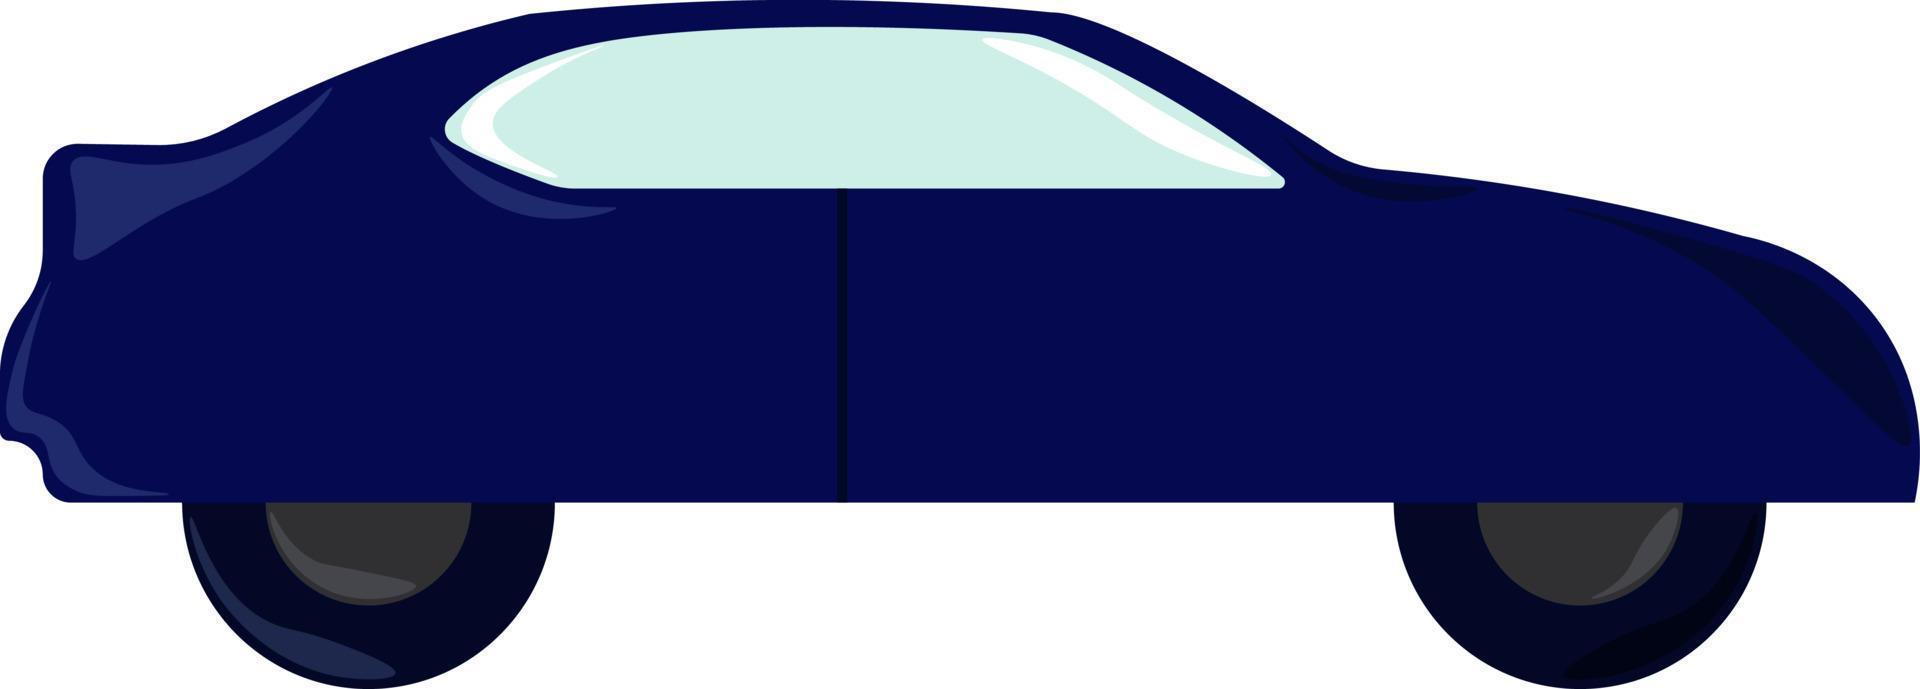 voiture bleue, illustration, vecteur sur fond blanc.